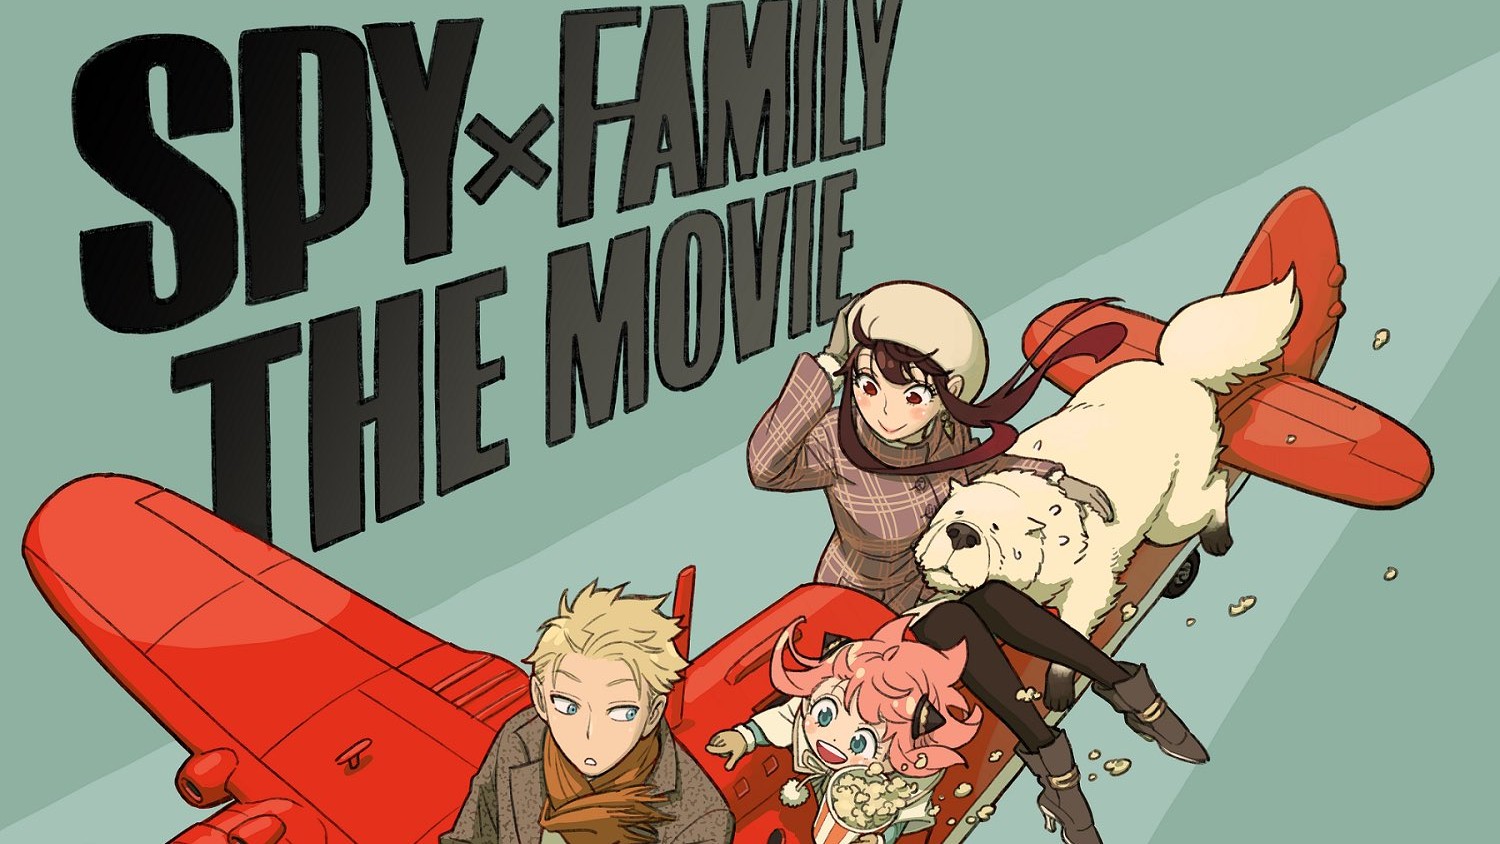 Spy x Family Part 2 - Episódio 7 - Animes Online